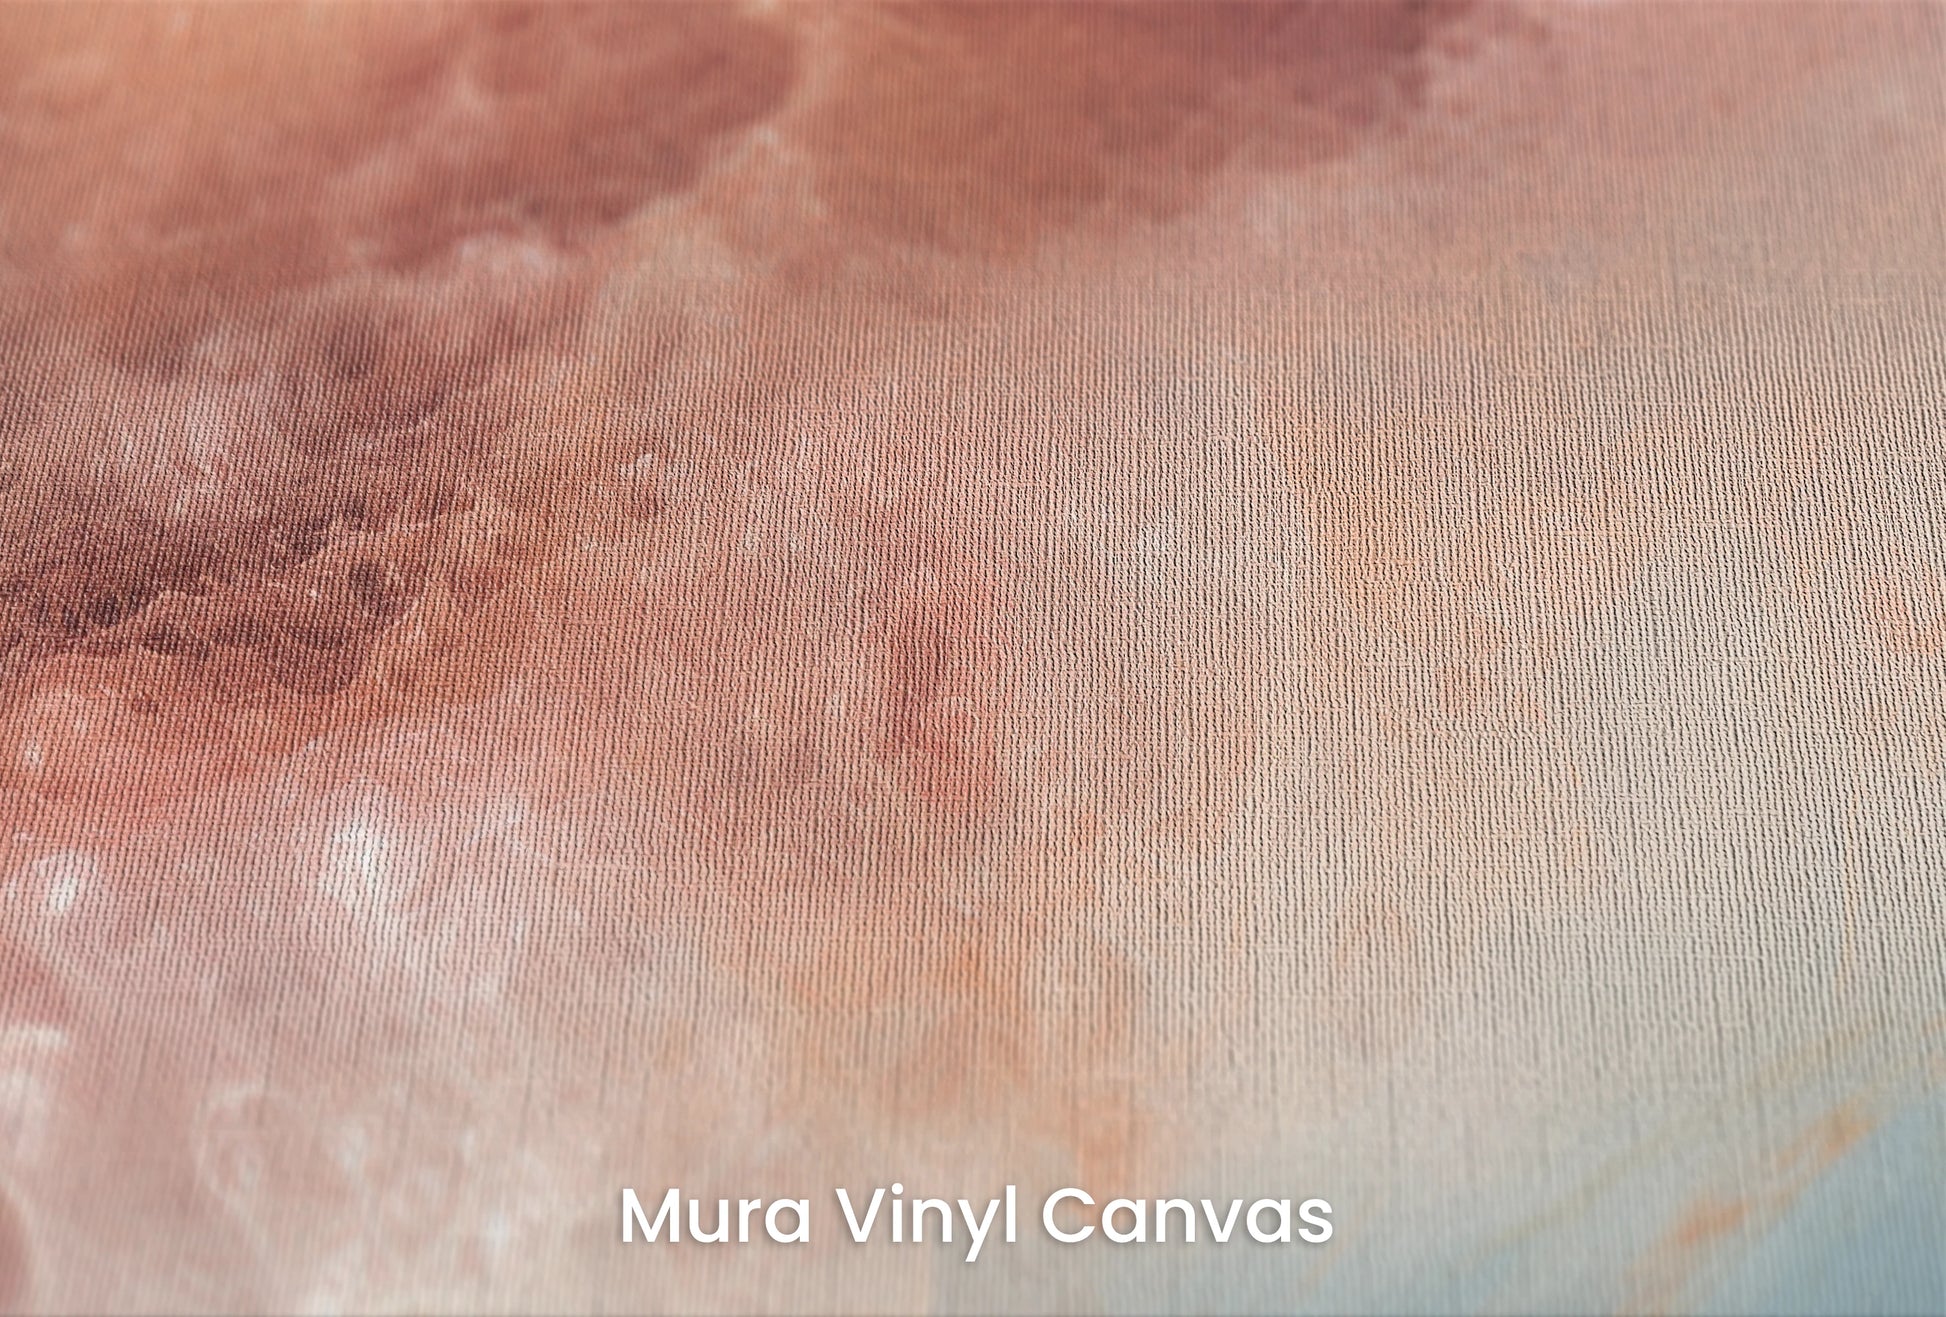 Zbliżenie na artystyczną fototapetę o nazwie Lunar Surface #2 na podłożu Mura Vinyl Canvas - faktura naturalnego płótna.